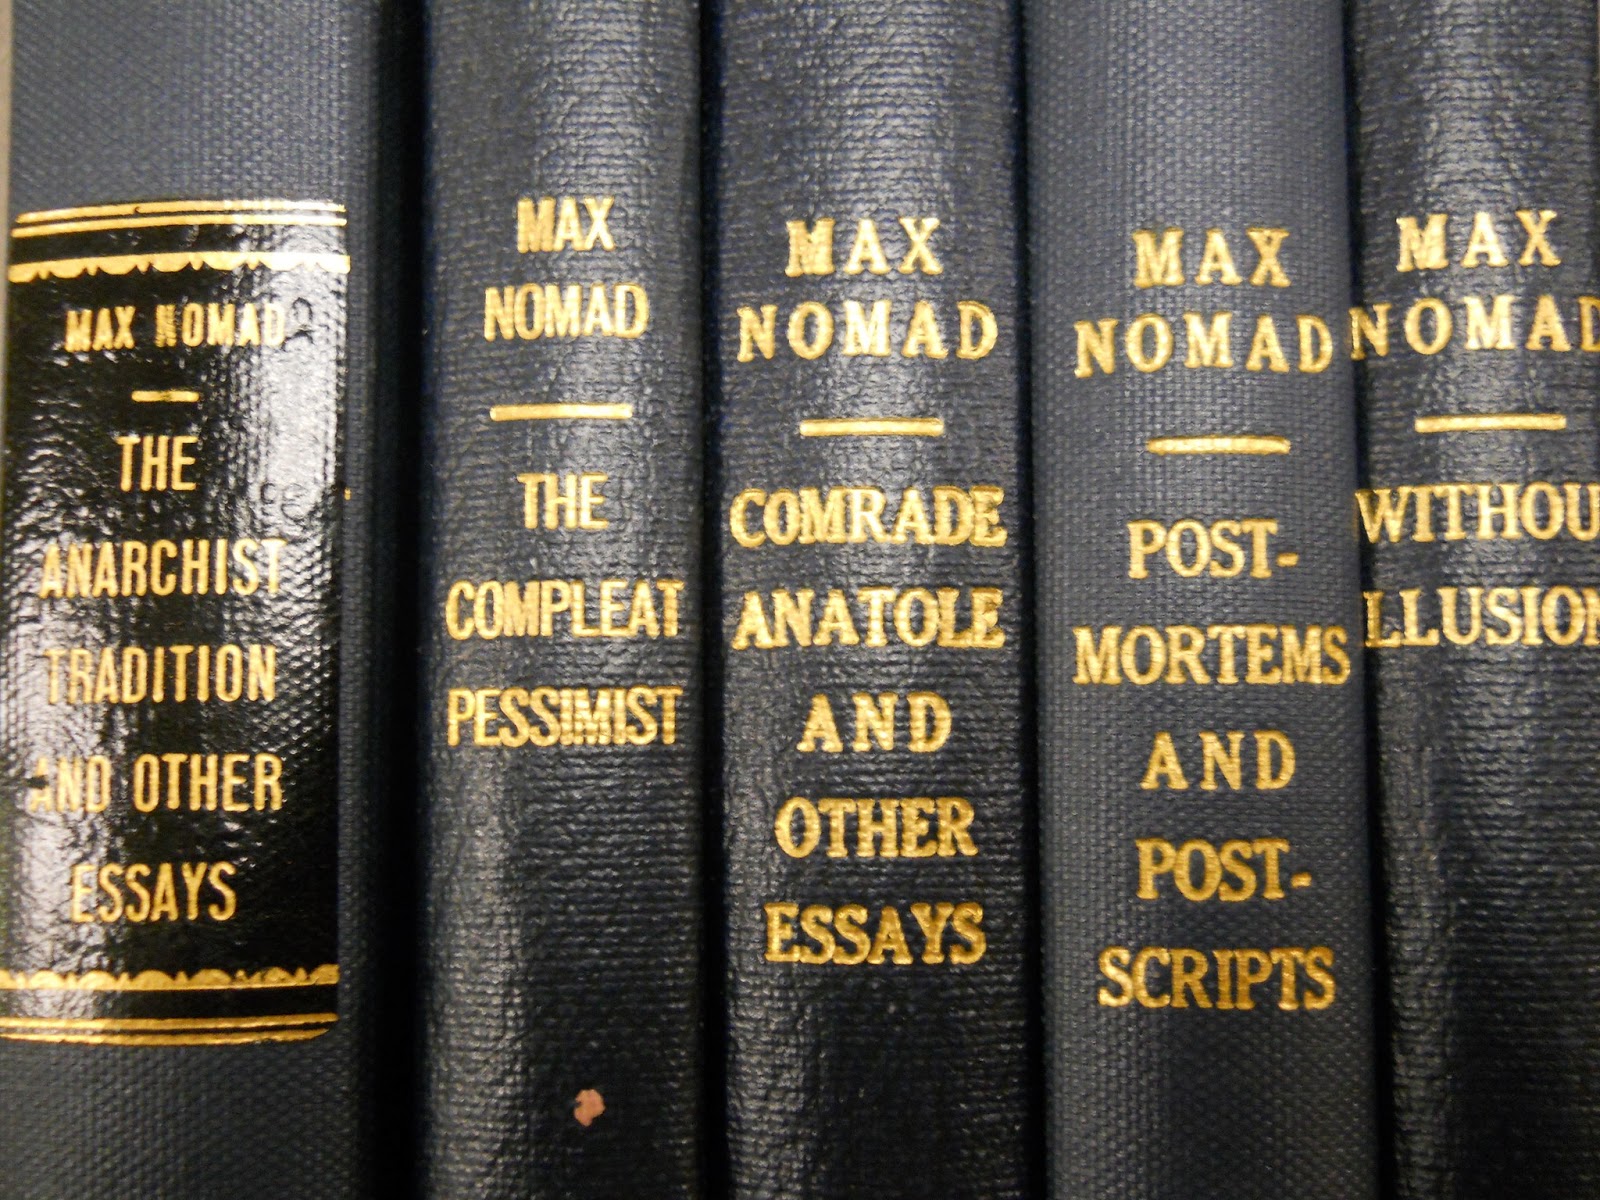 5 volumes of Max Nomad essays.